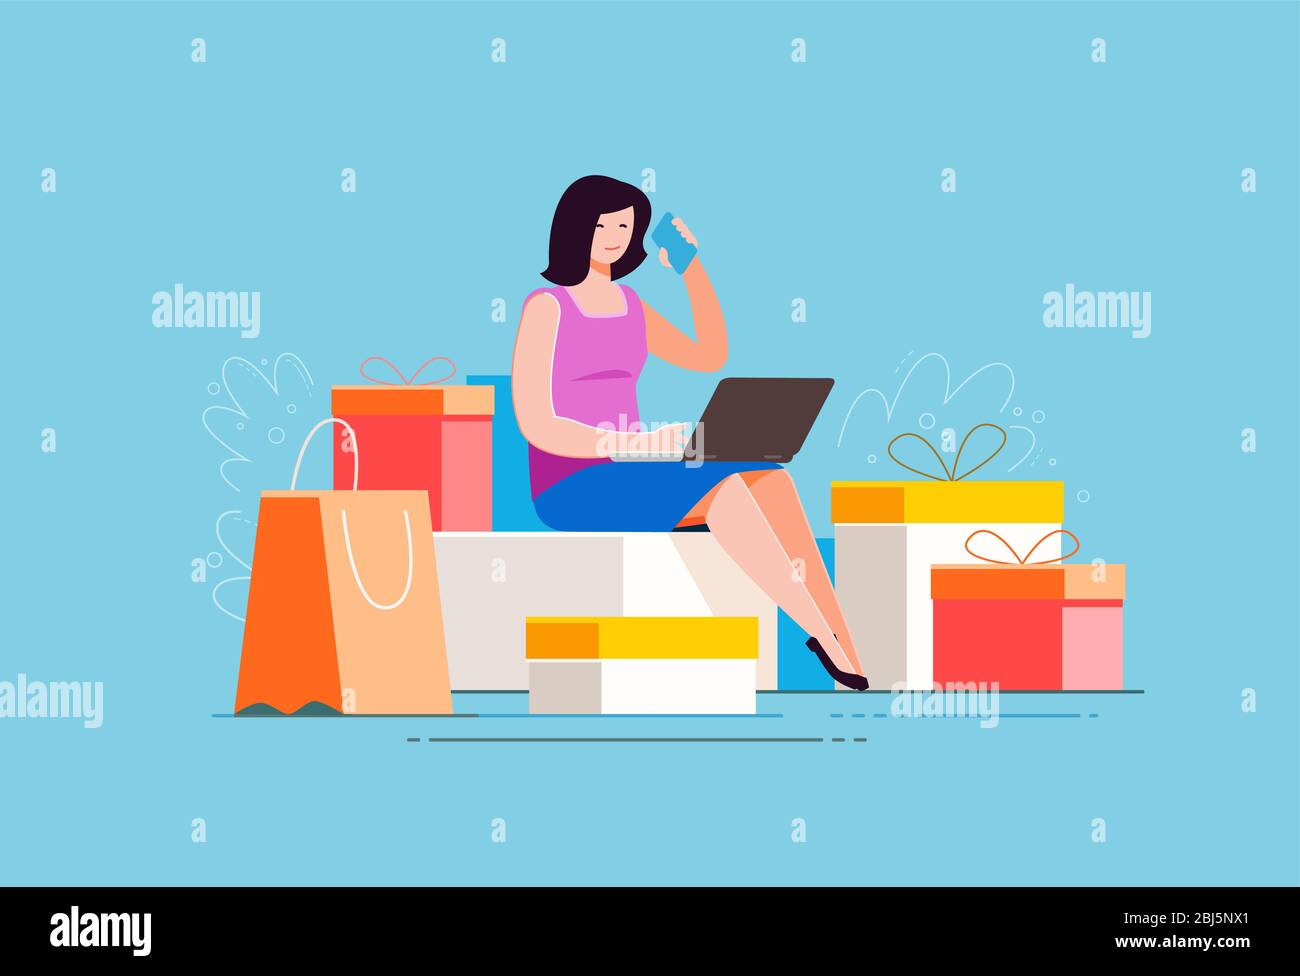 Kauf von Waren über Online-Shop. Shopping, Mode Vektor Illustration Stock Vektor